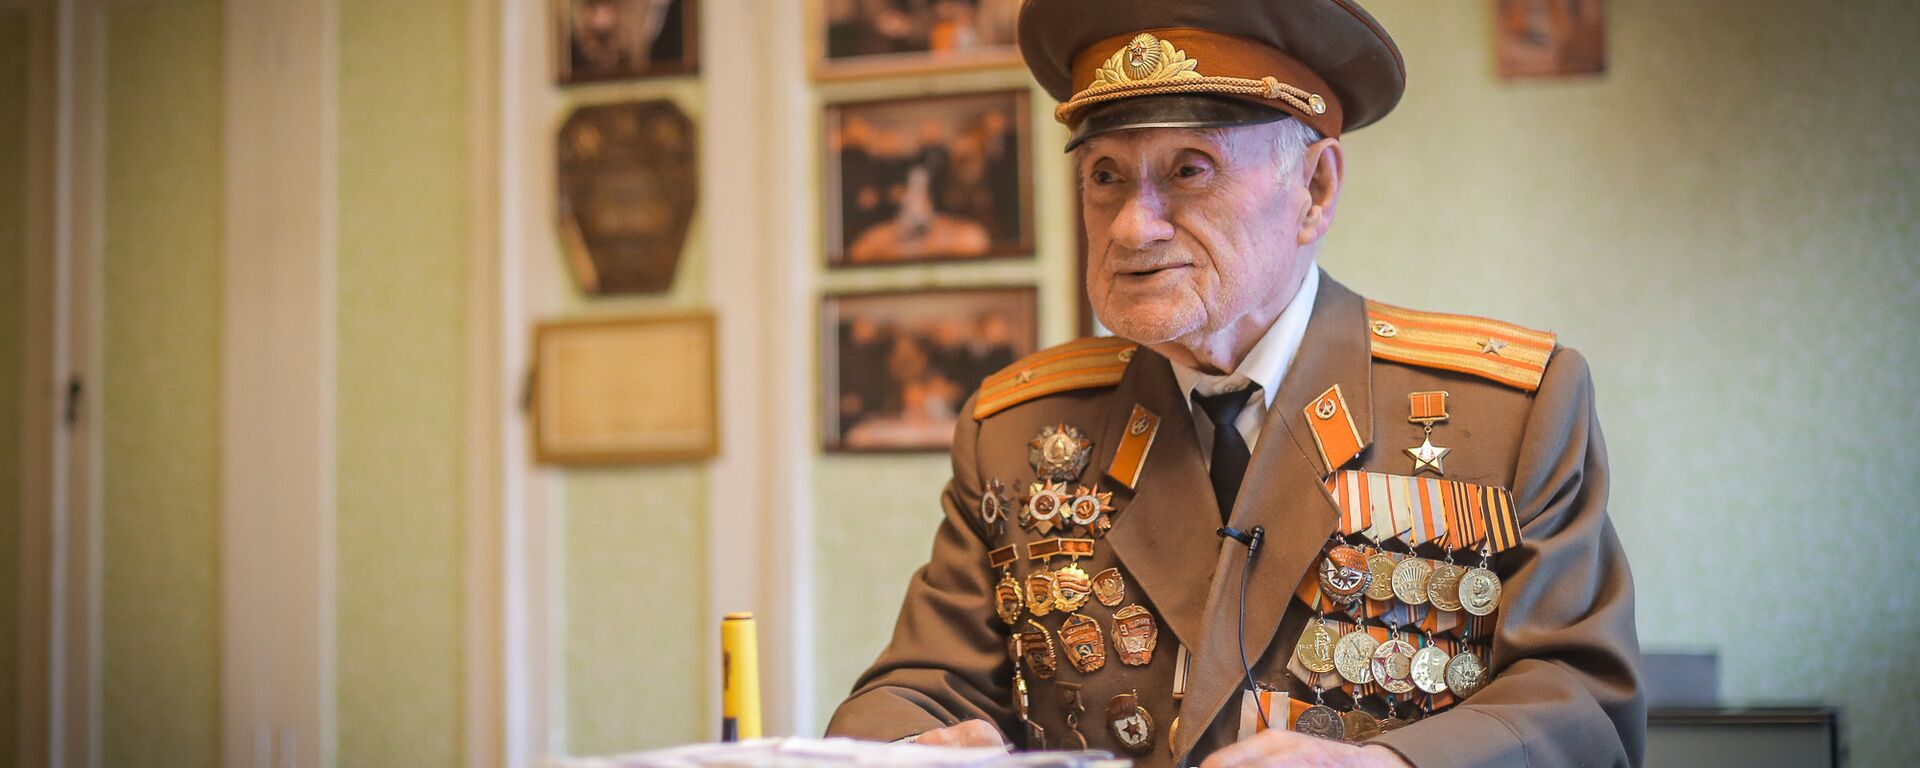 Ветеран ВОВ, майор, командир роты Николоз Чарашвили - Sputnik Грузия, 1920, 06.05.2017